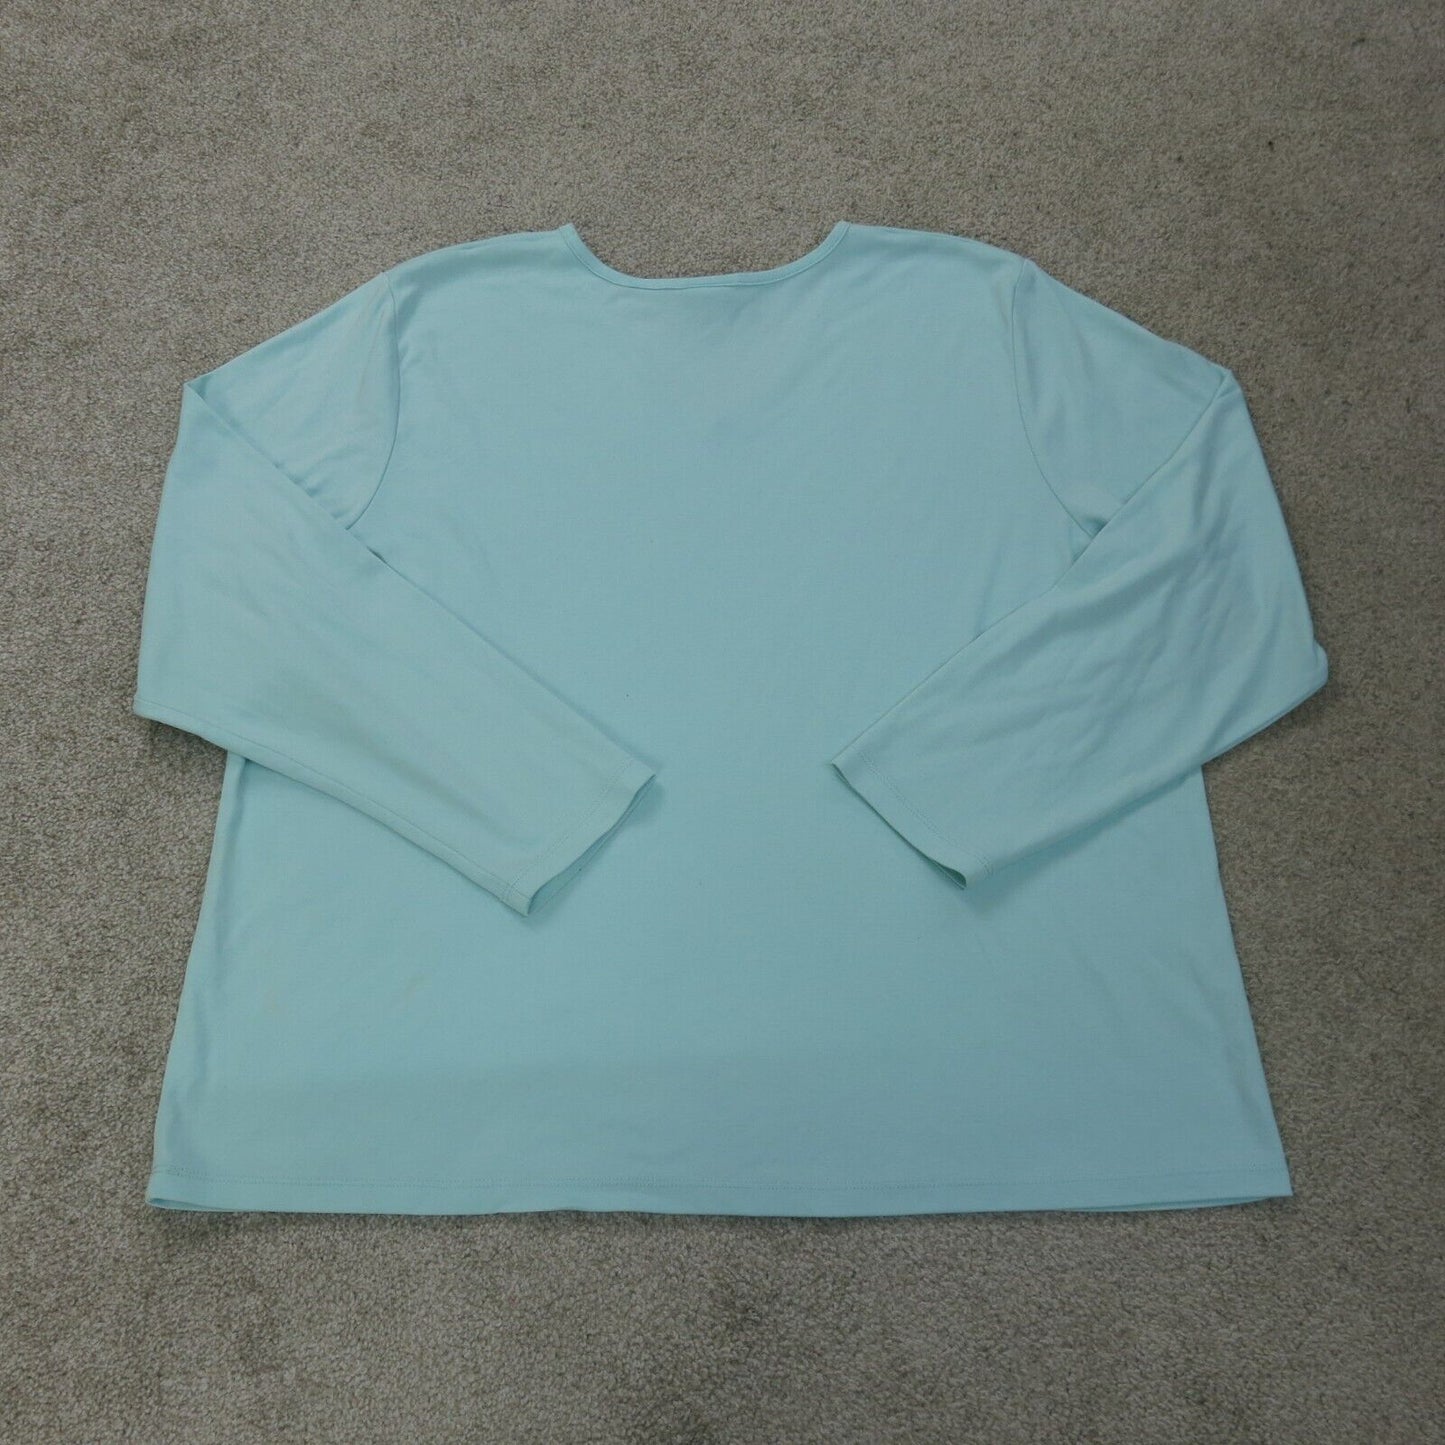 L L Bean Shirt Womens 2X Aqua Blue Long Sleeve Outdoors Lightweight Top V Neck